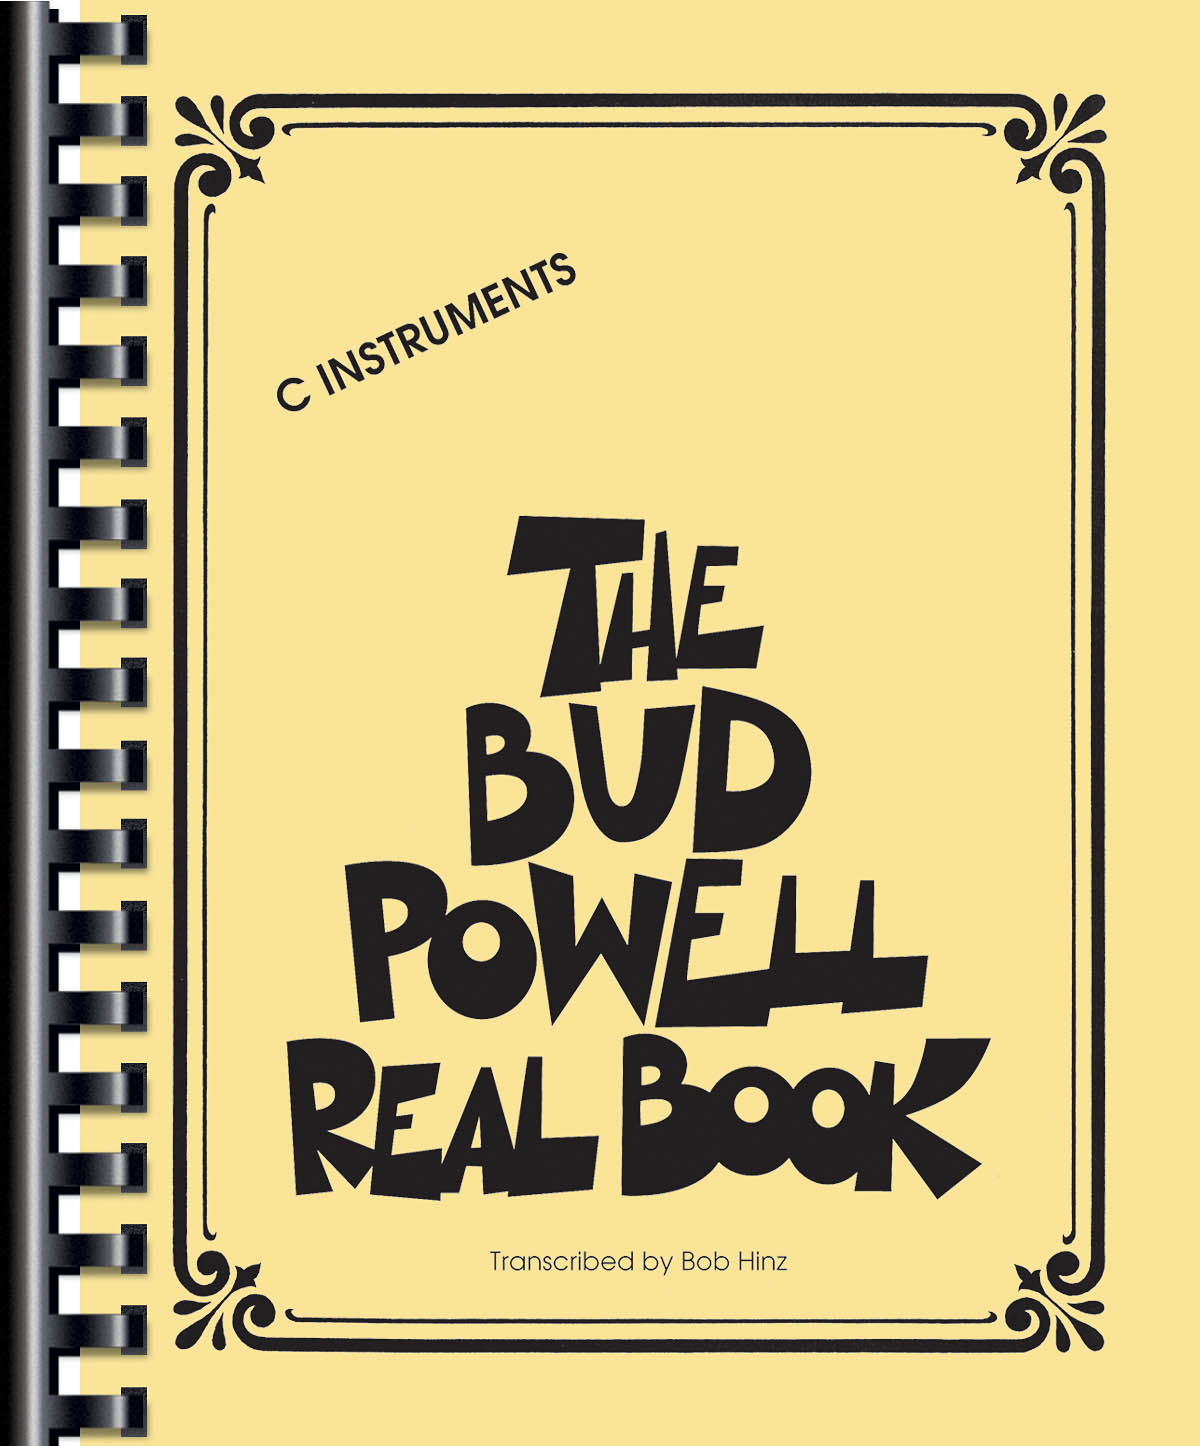 The Bud Powell Real Book - melodie s akordy pro nástroje v ladění C